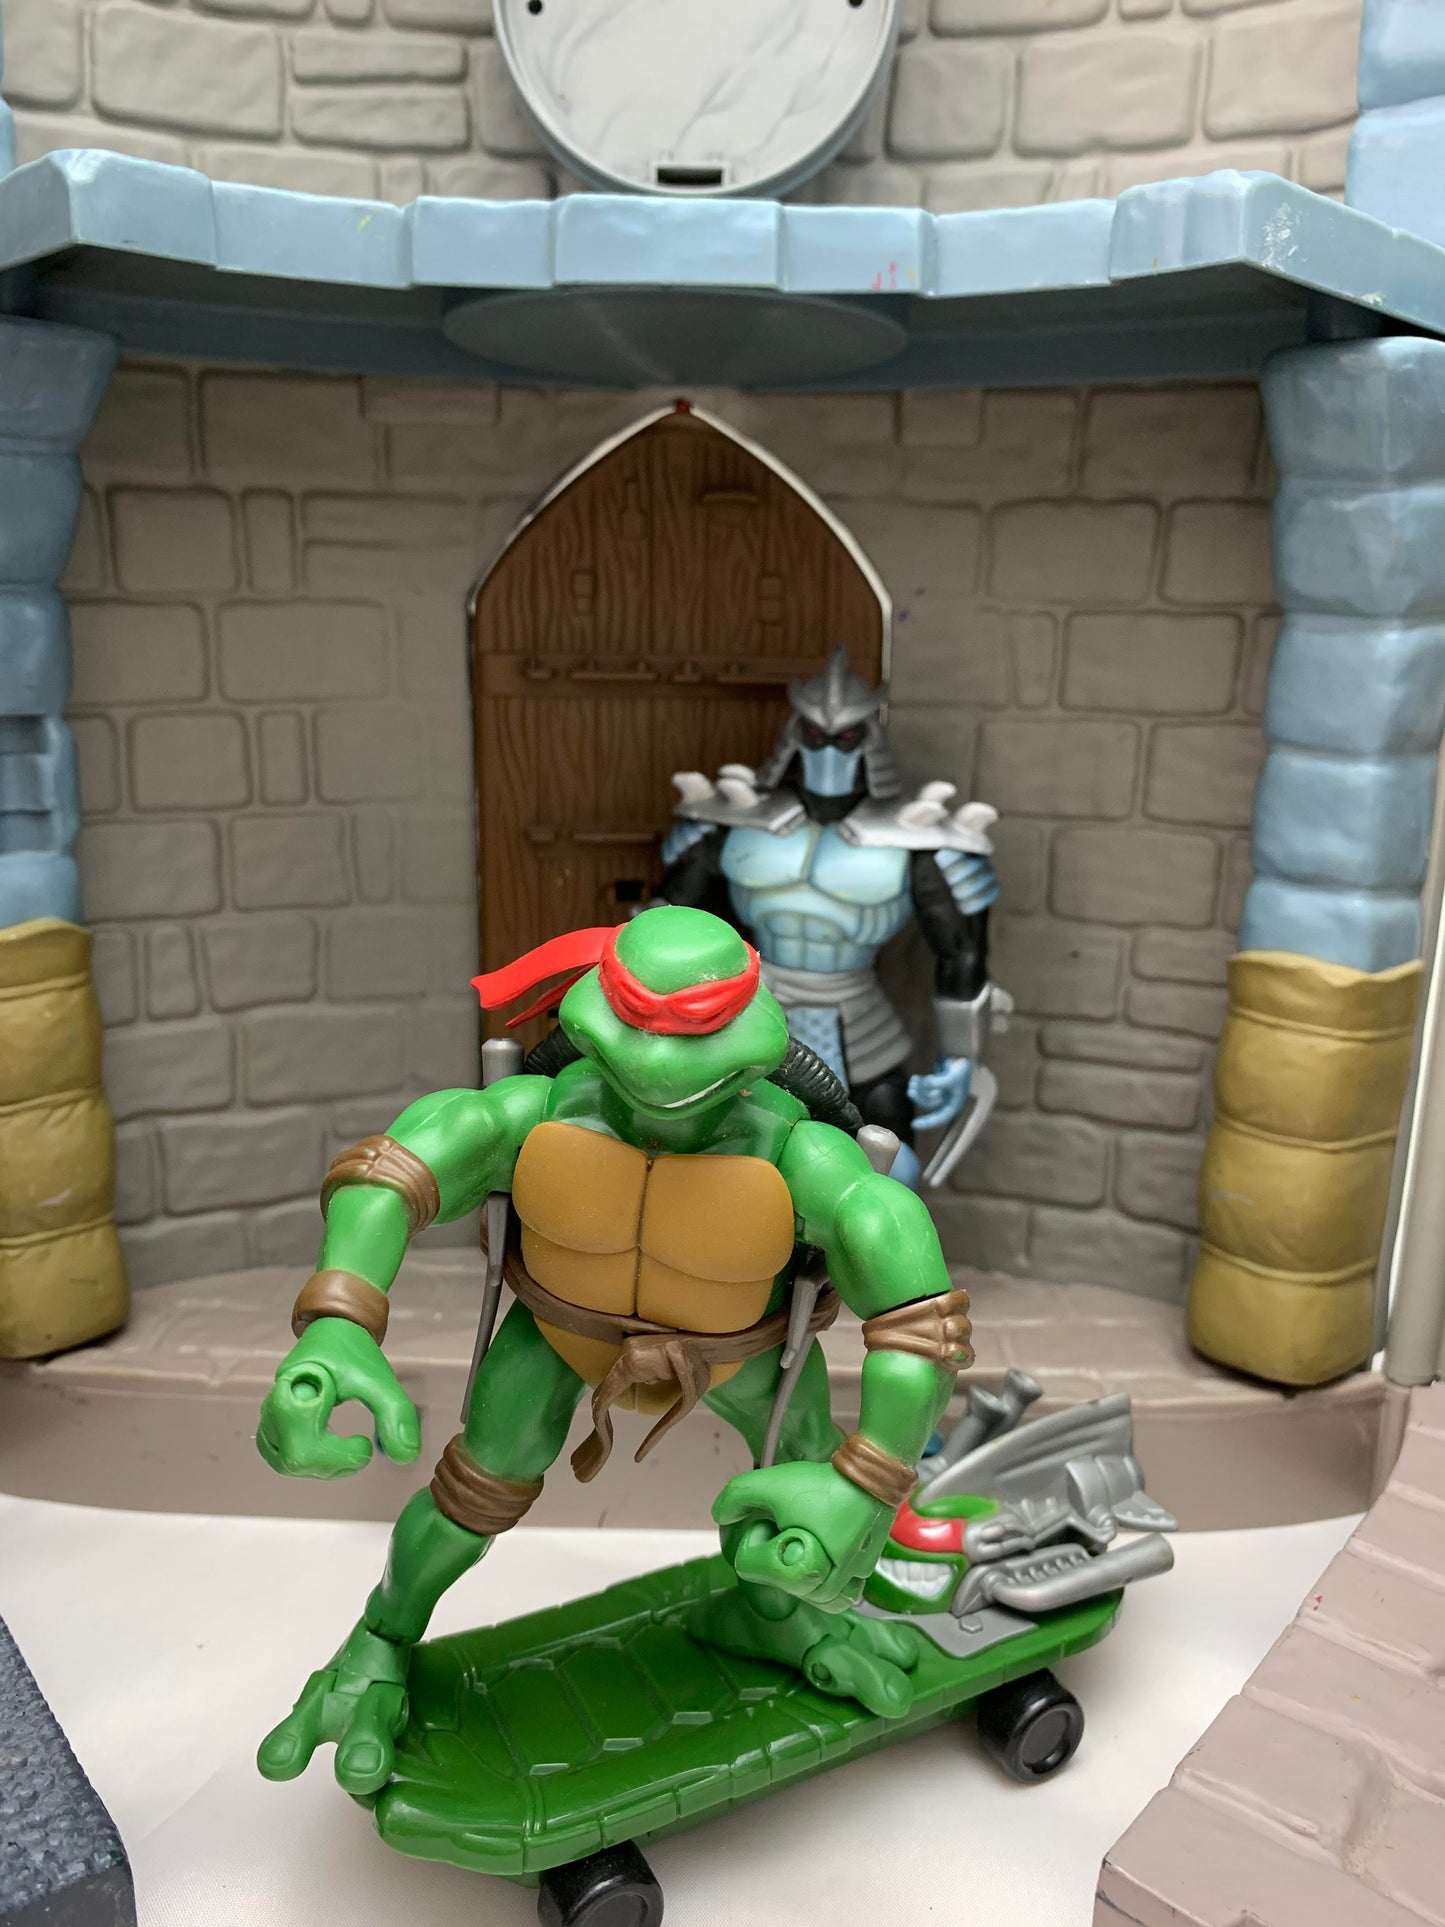 Playmates 2003 Teenage Mutant Ninja Turtles TMNT Sewer Lair Playset no figures - Playset